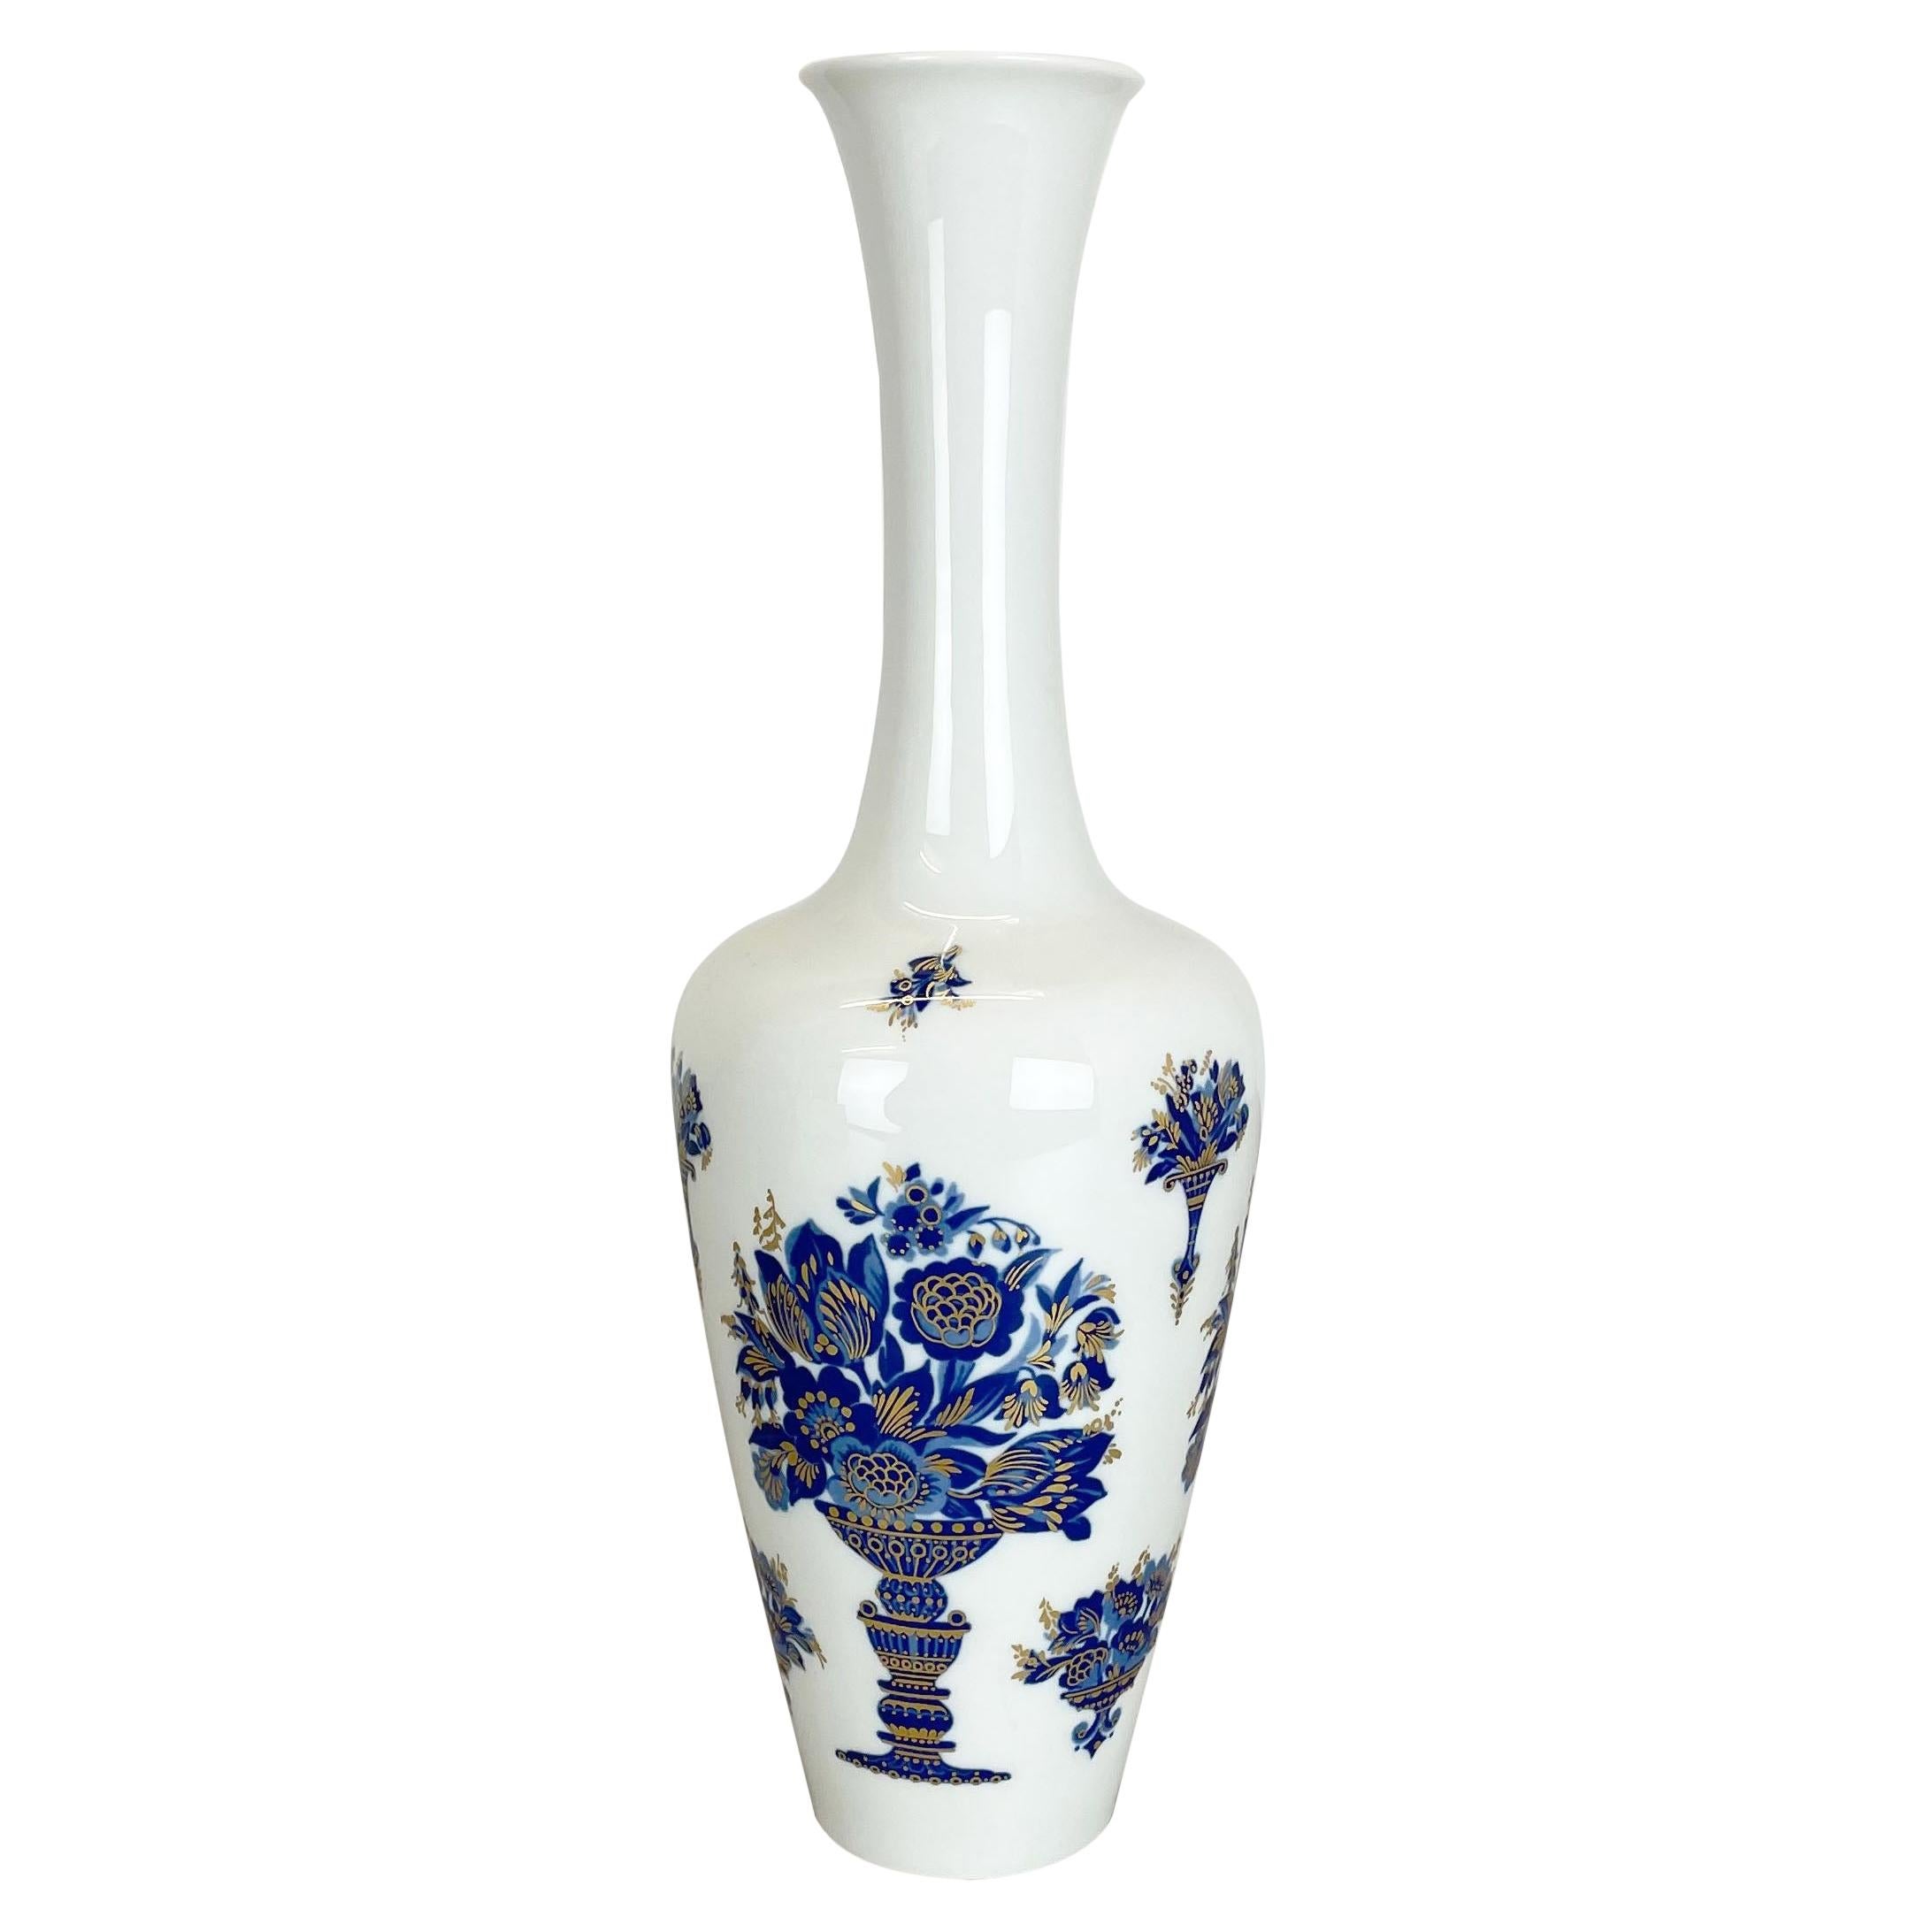 Original 1970s Op Art Vase Porcelain German Vase by Heinrich Ceramics, Germany